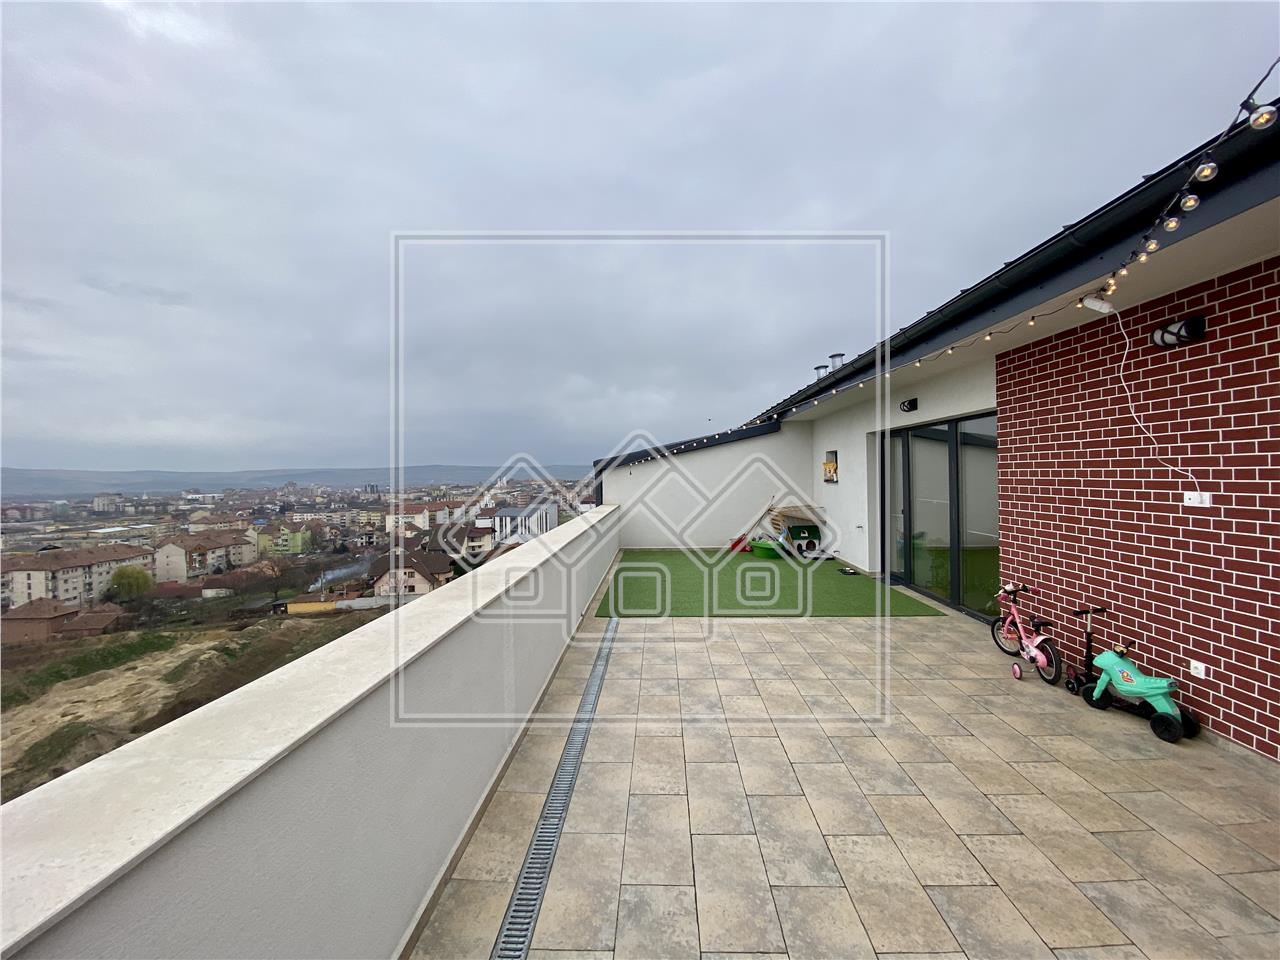 Penthouse zum Verkauf in Alba Iulia - Terrasse von 59 qm und Balkon